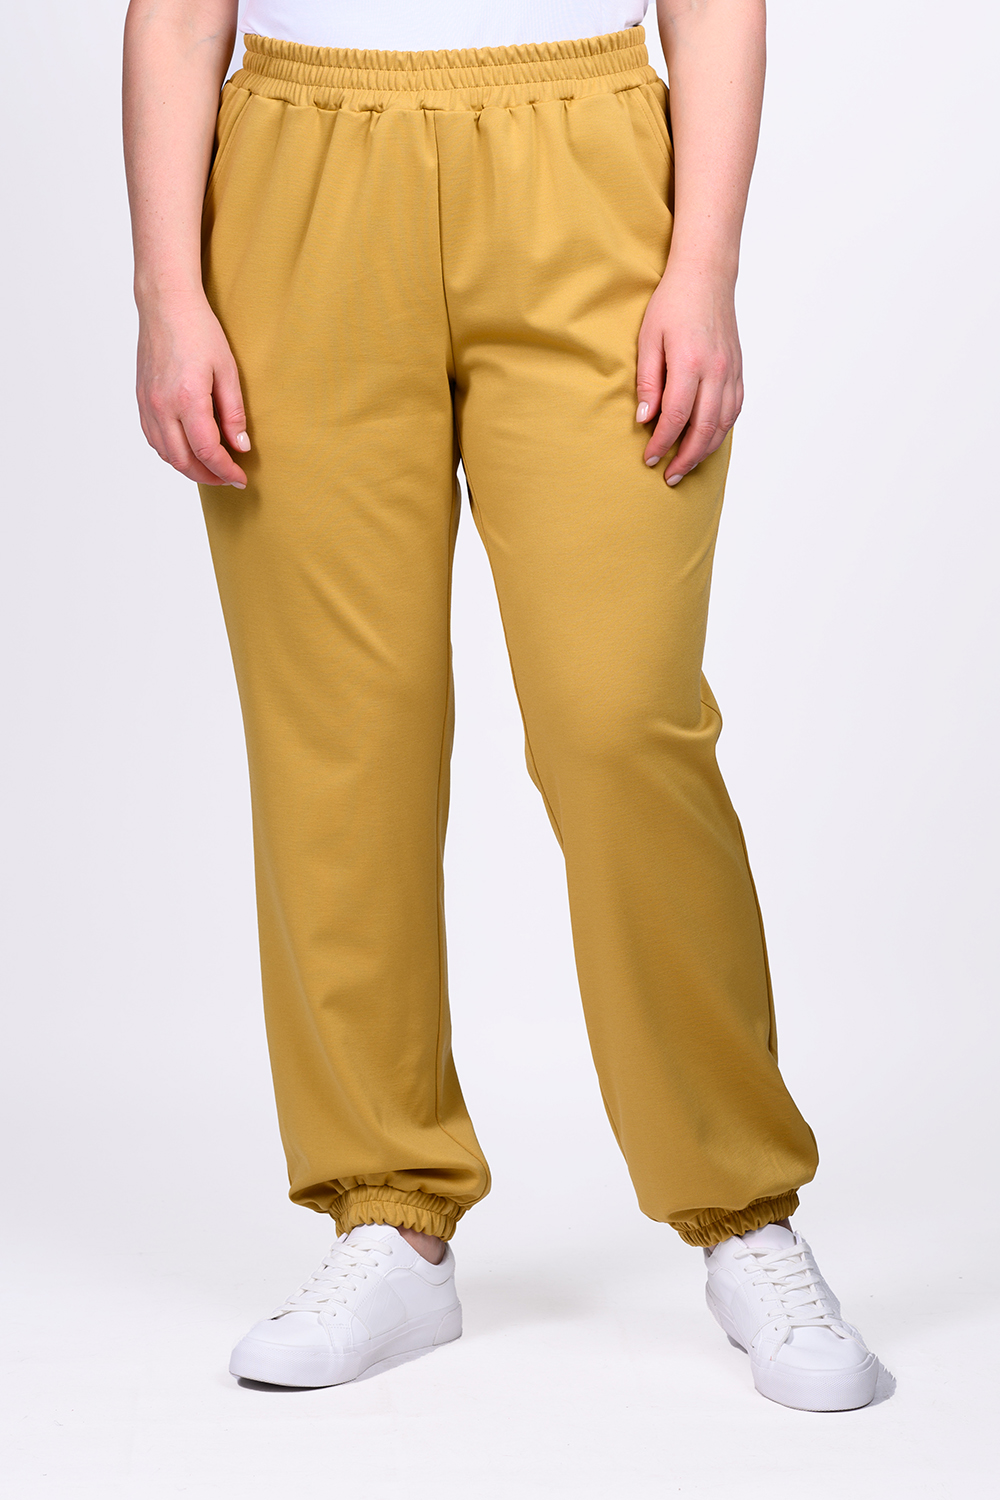 Спортивные брюки женские SVESTA P463 желтые 58 RU